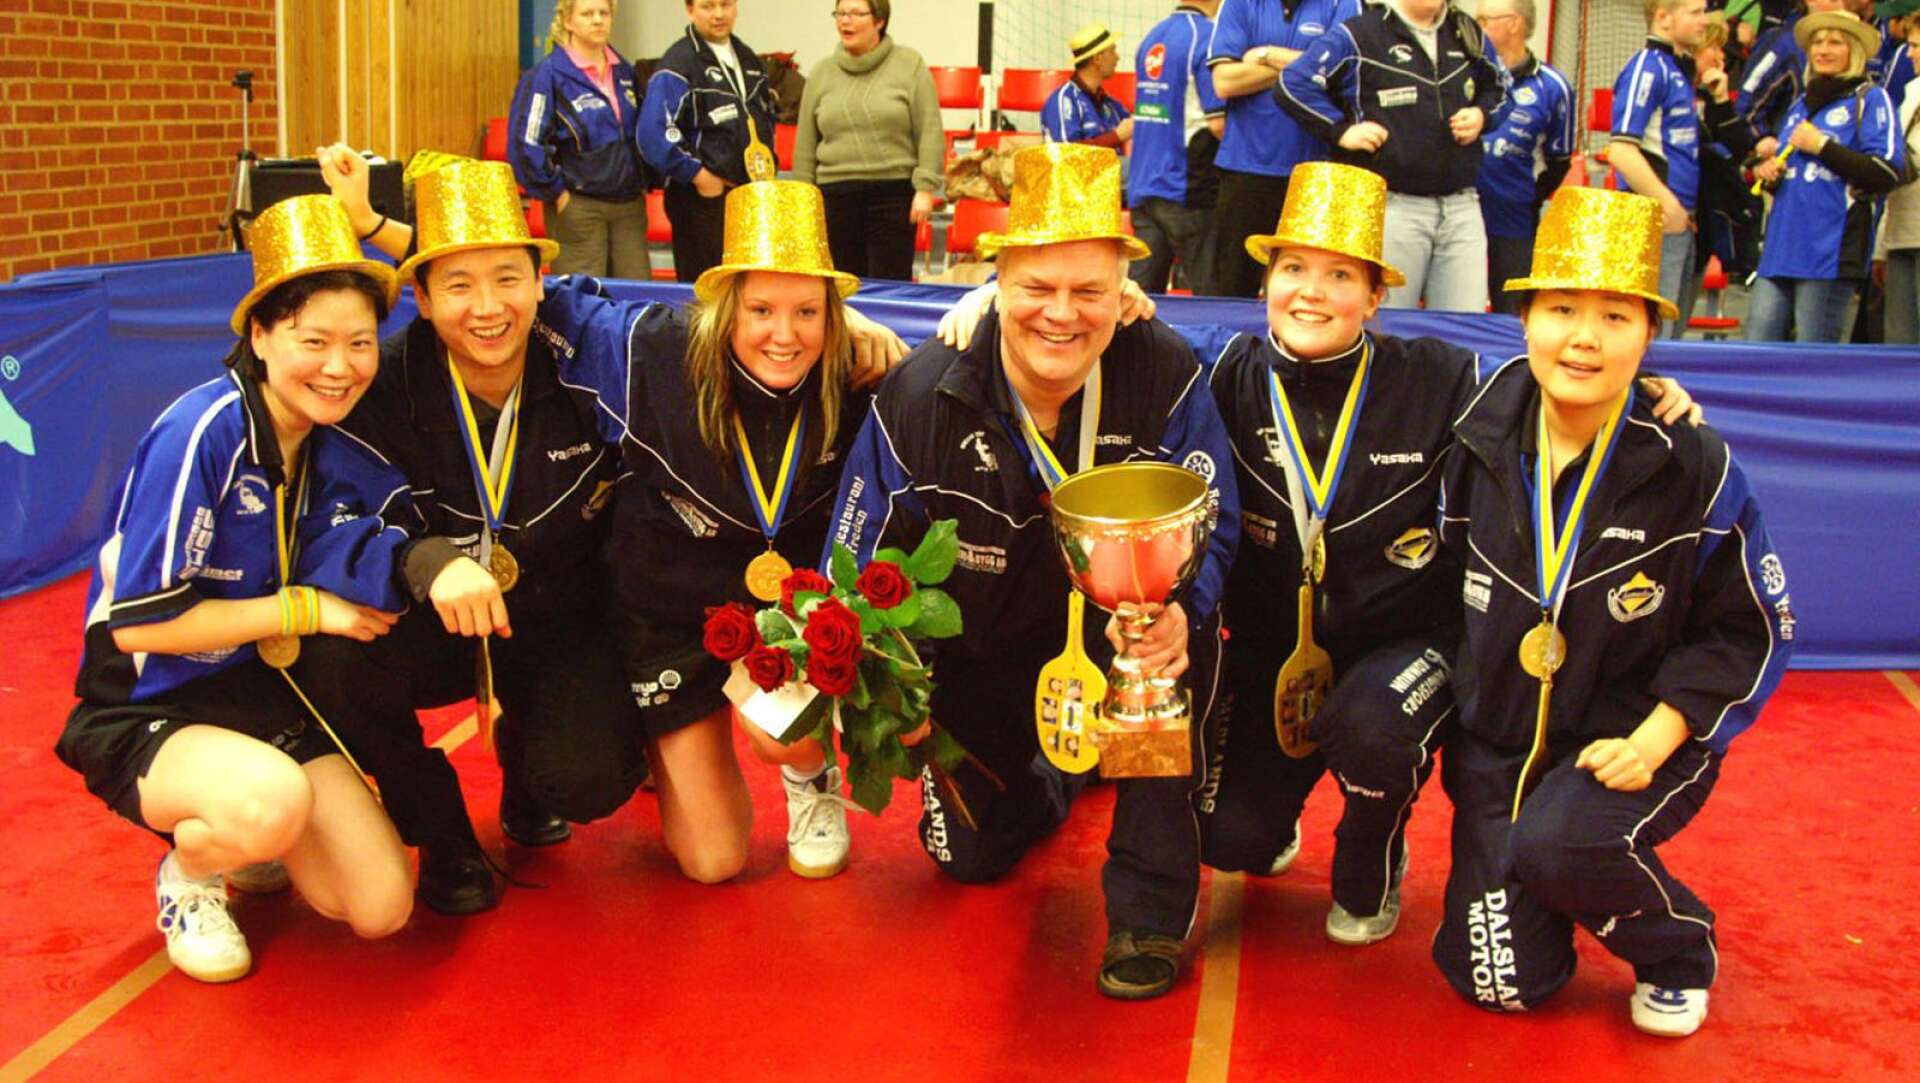 Ärtemarks IF med segerpokalen och i guldhattar efter SM-guldet i Helsingborg 2006. Zhang Yan, Wang Qing (tränare), Sara Rohdin, Kent-Eric Gustafsson (tränare), Susanna Wigow och Zhang Fang.